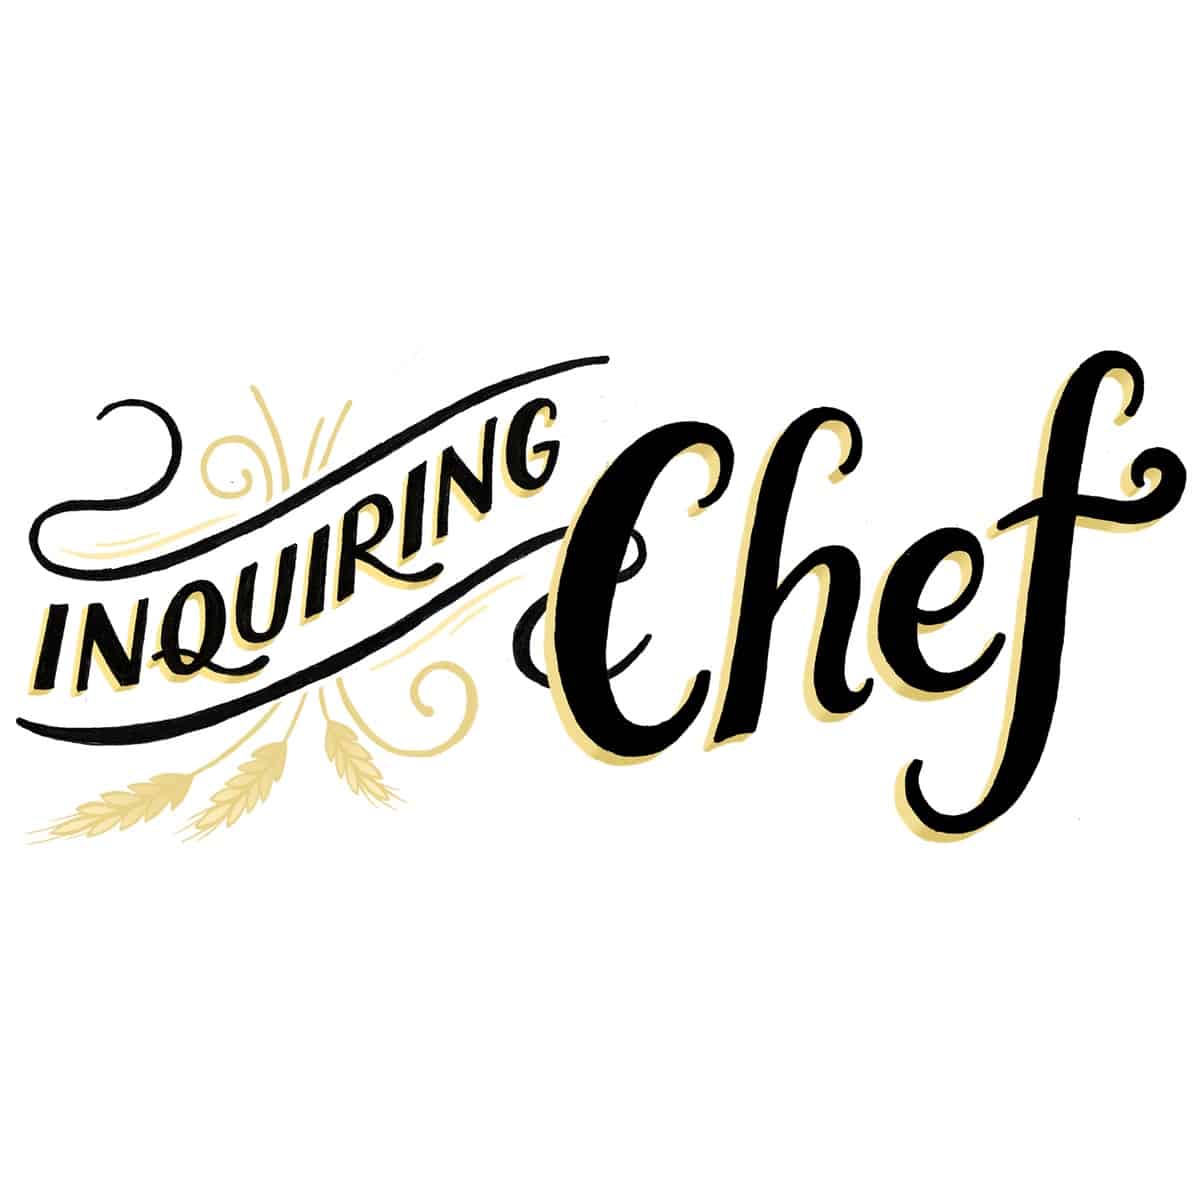 https://inquiringchef.com/wp-content/uploads/2022/03/Inquiring-chef-logo-square-on-white.jpg